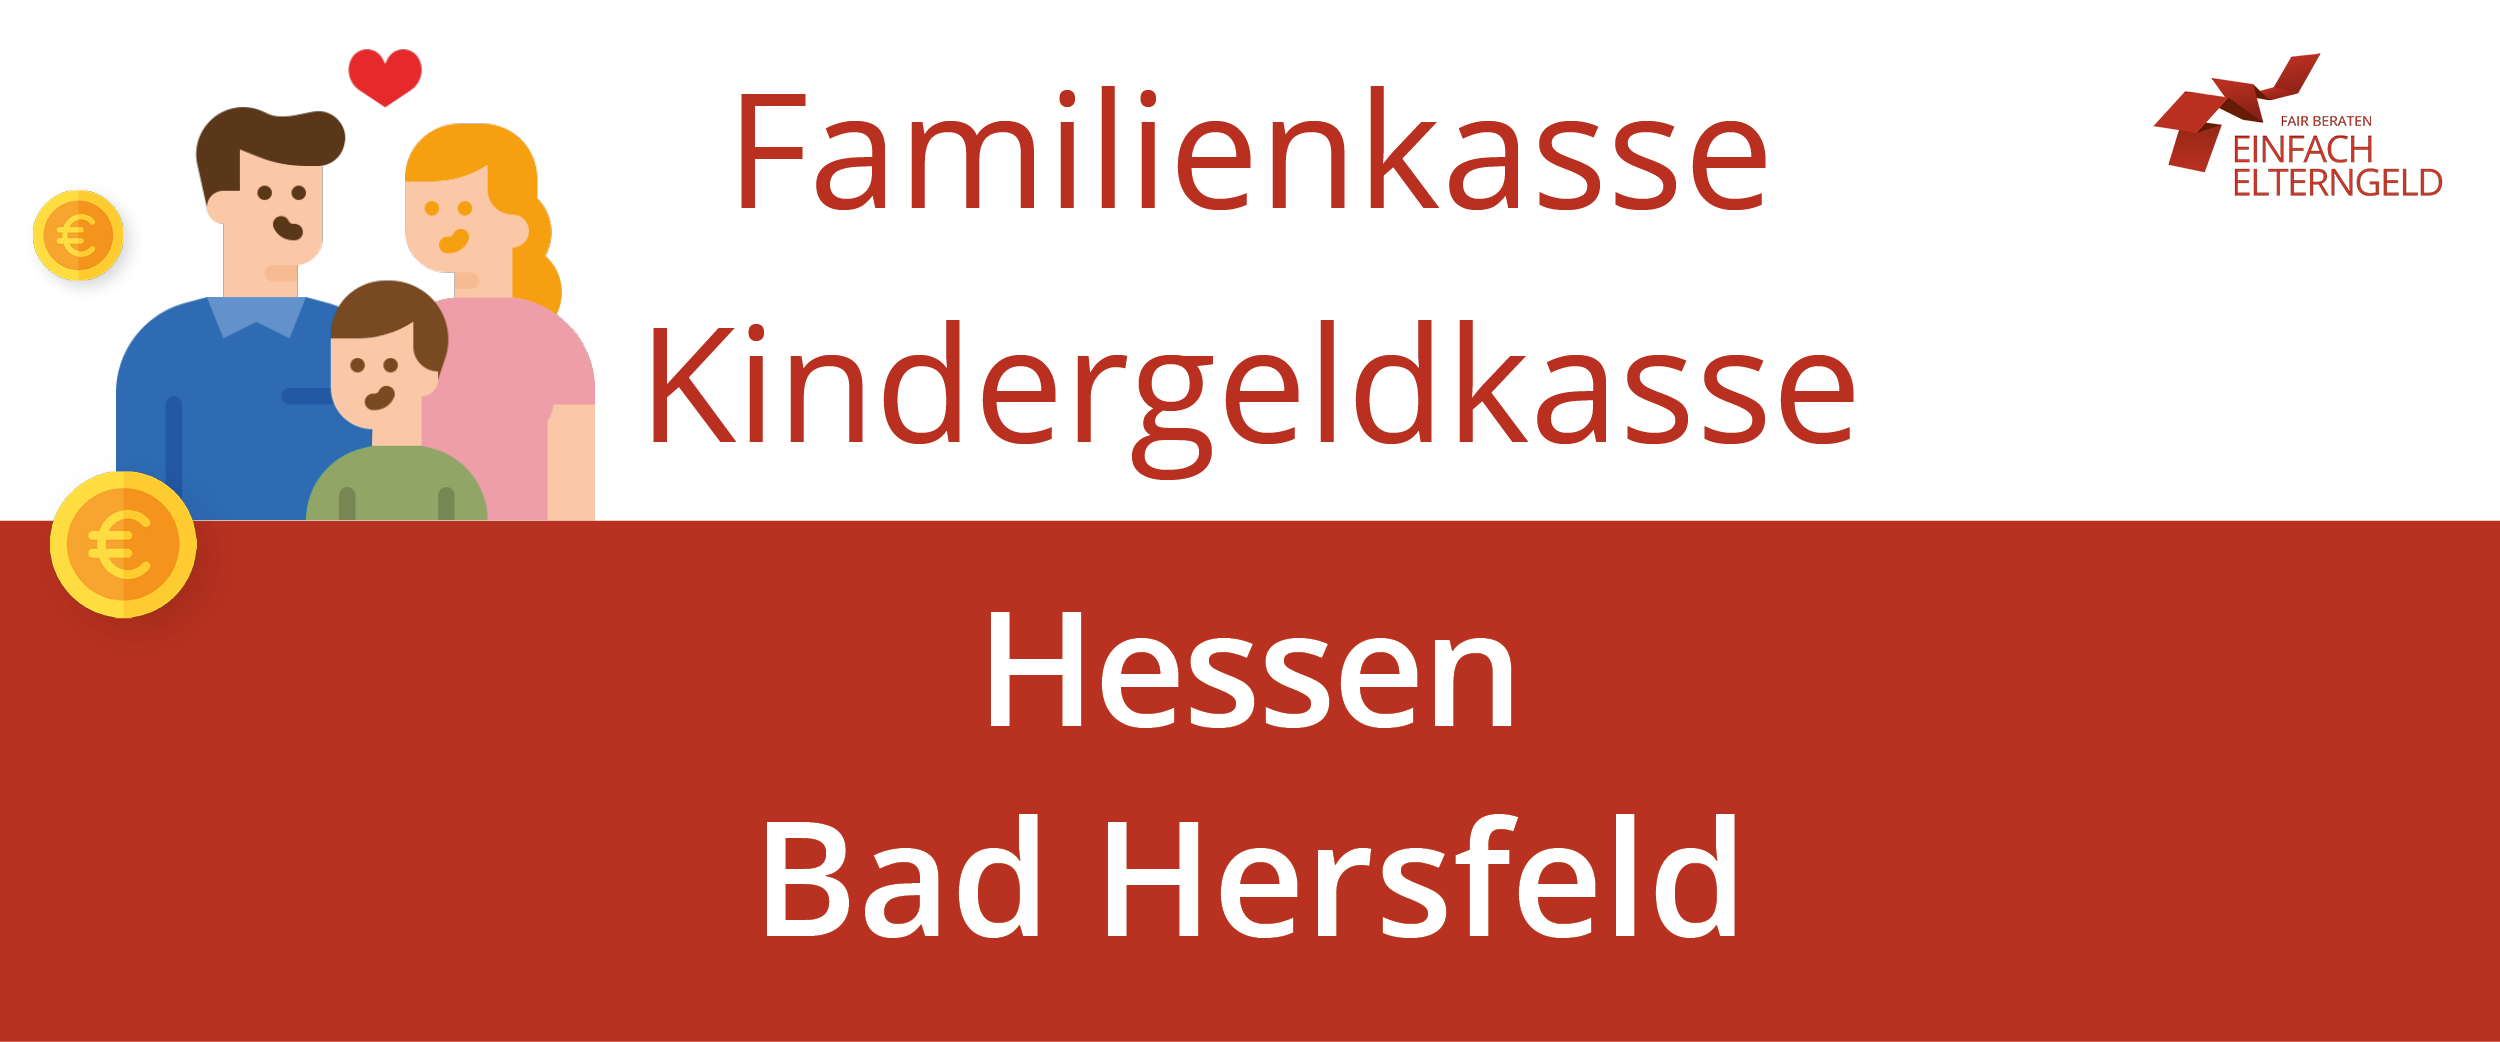 Wir stellen die Familienkasse Kindergeldkasse Hessen Bad Hersfeld vor.